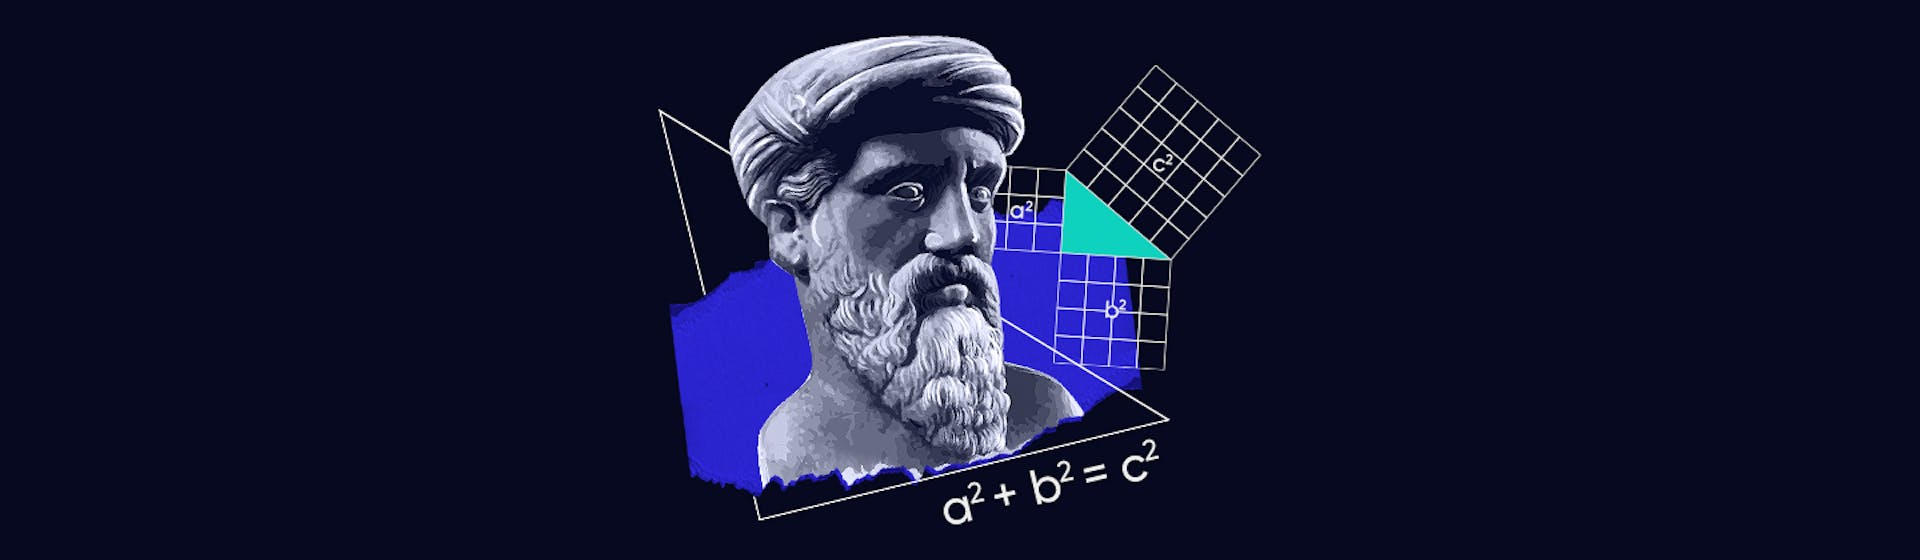 Conoce el teorema de Pitágoras y aprende cómo utilizarlo en la vida real